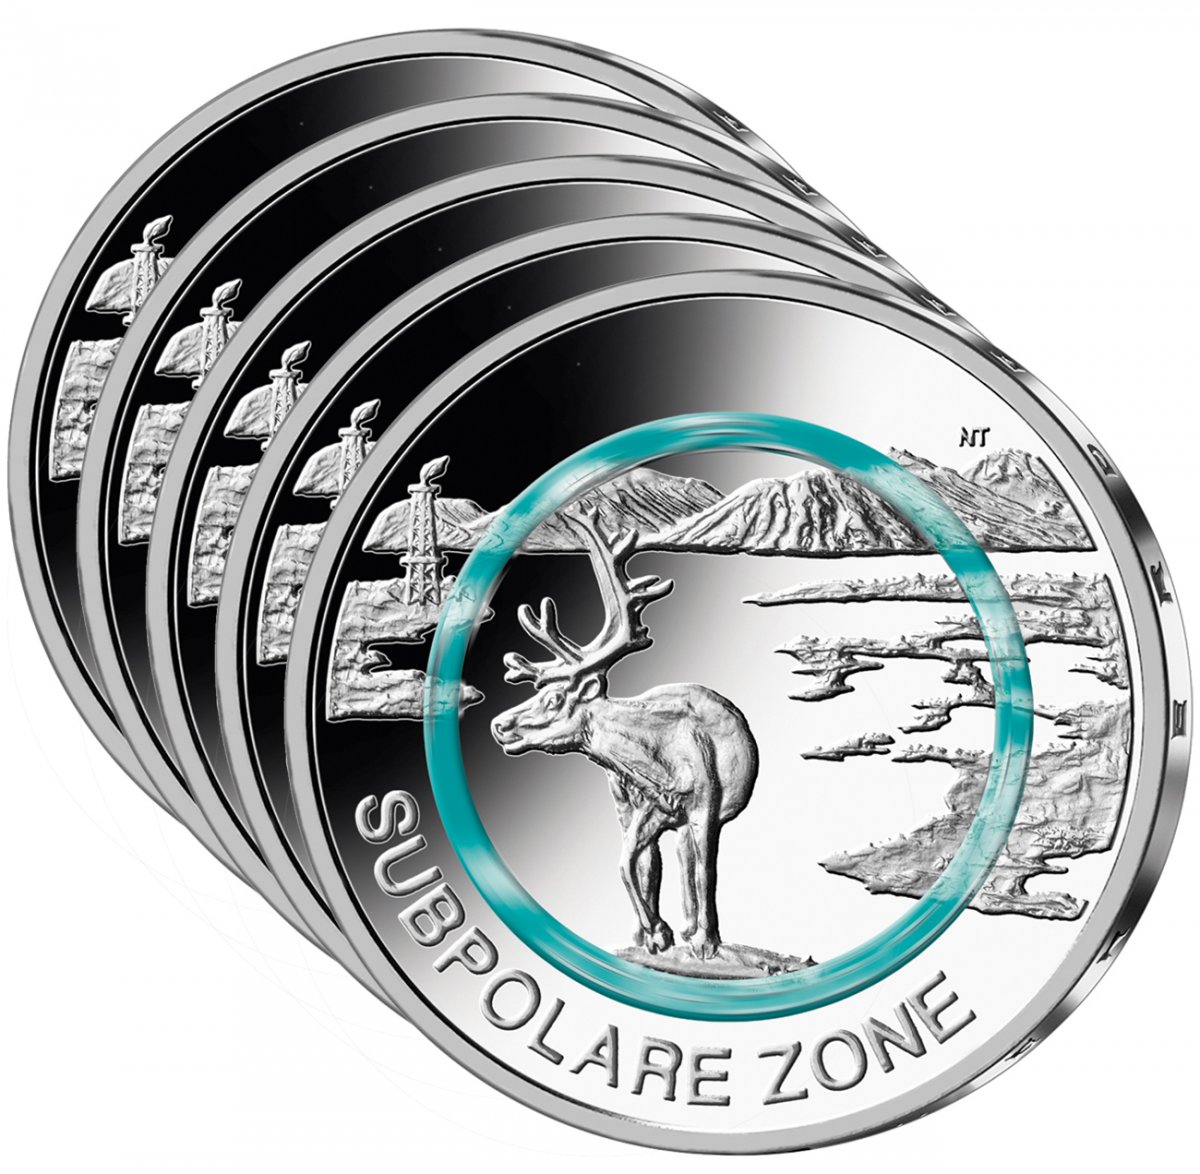 5 euro polymer ring collector coins set 2020 "Subpolare Zone" 